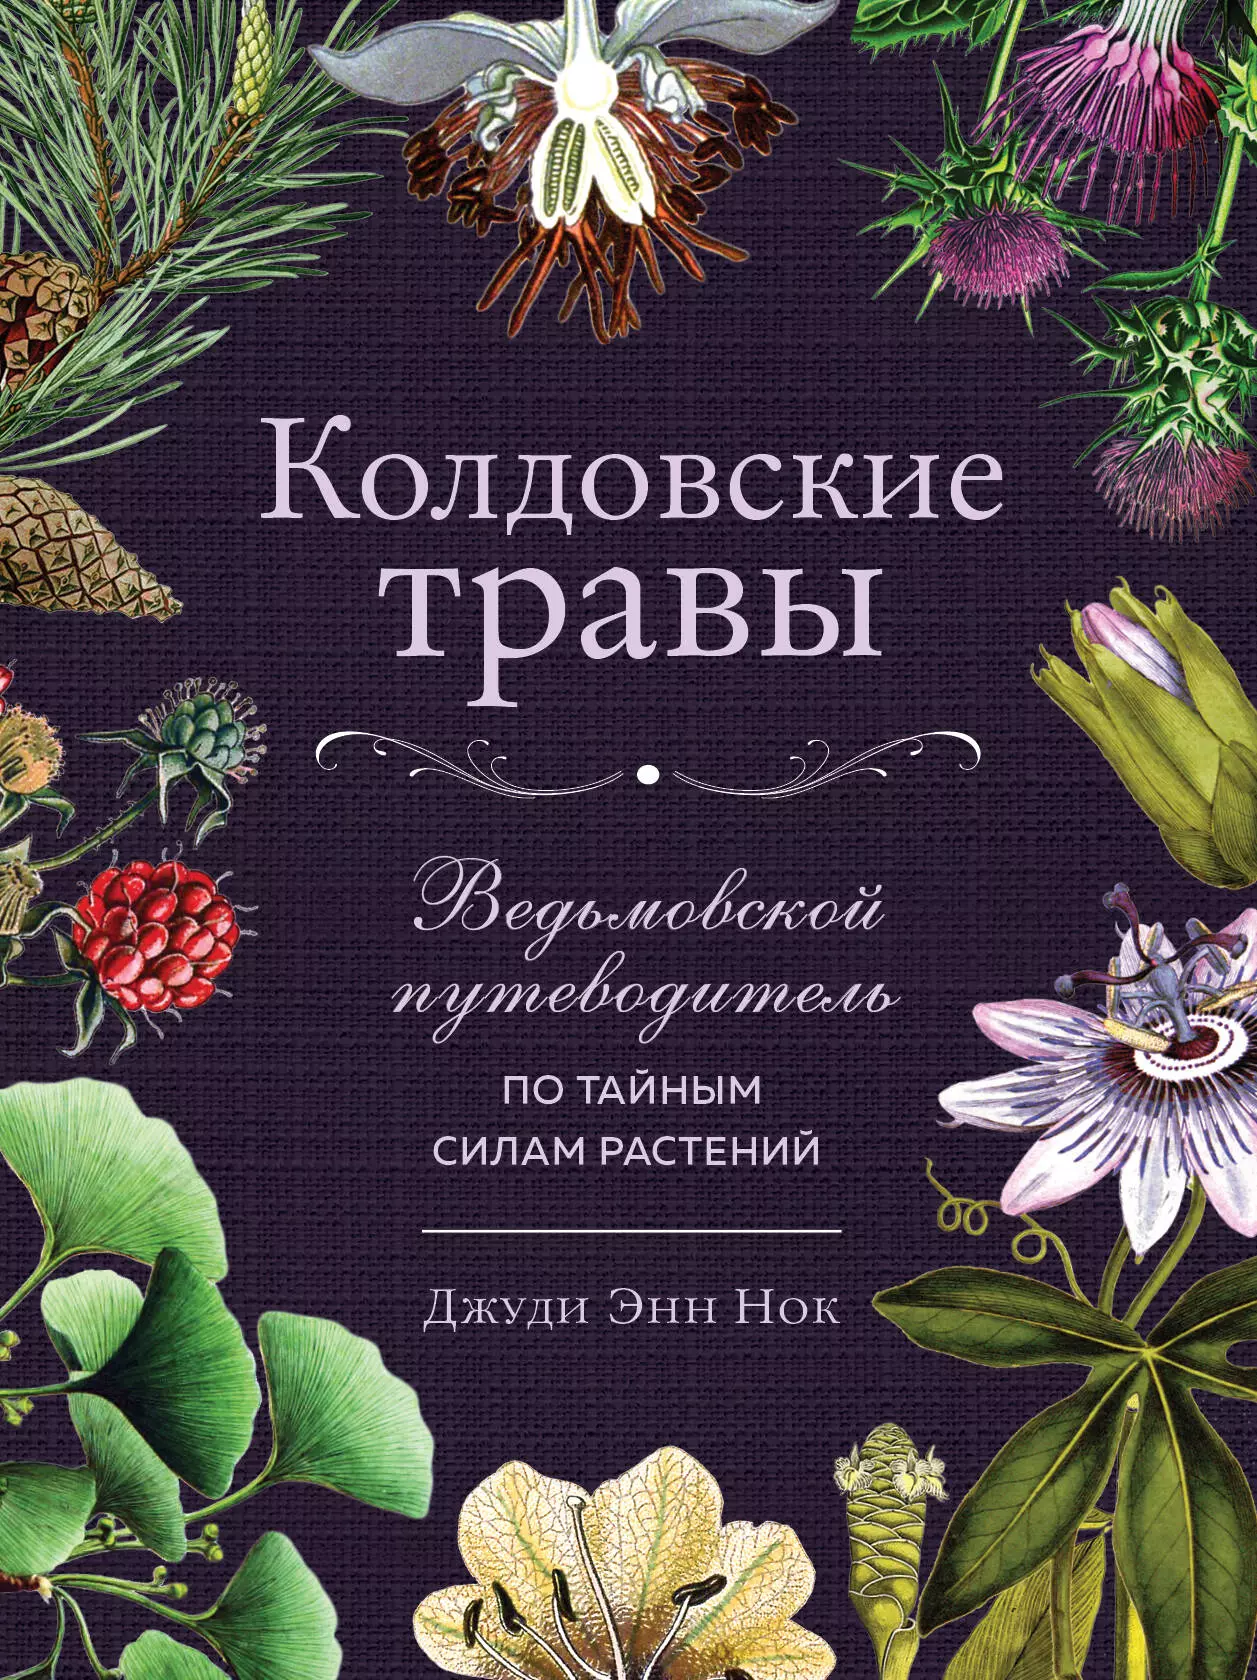 Нок Джуди Энн - Колдовские травы. Ведьмовской путеводитель по тайным силам растений